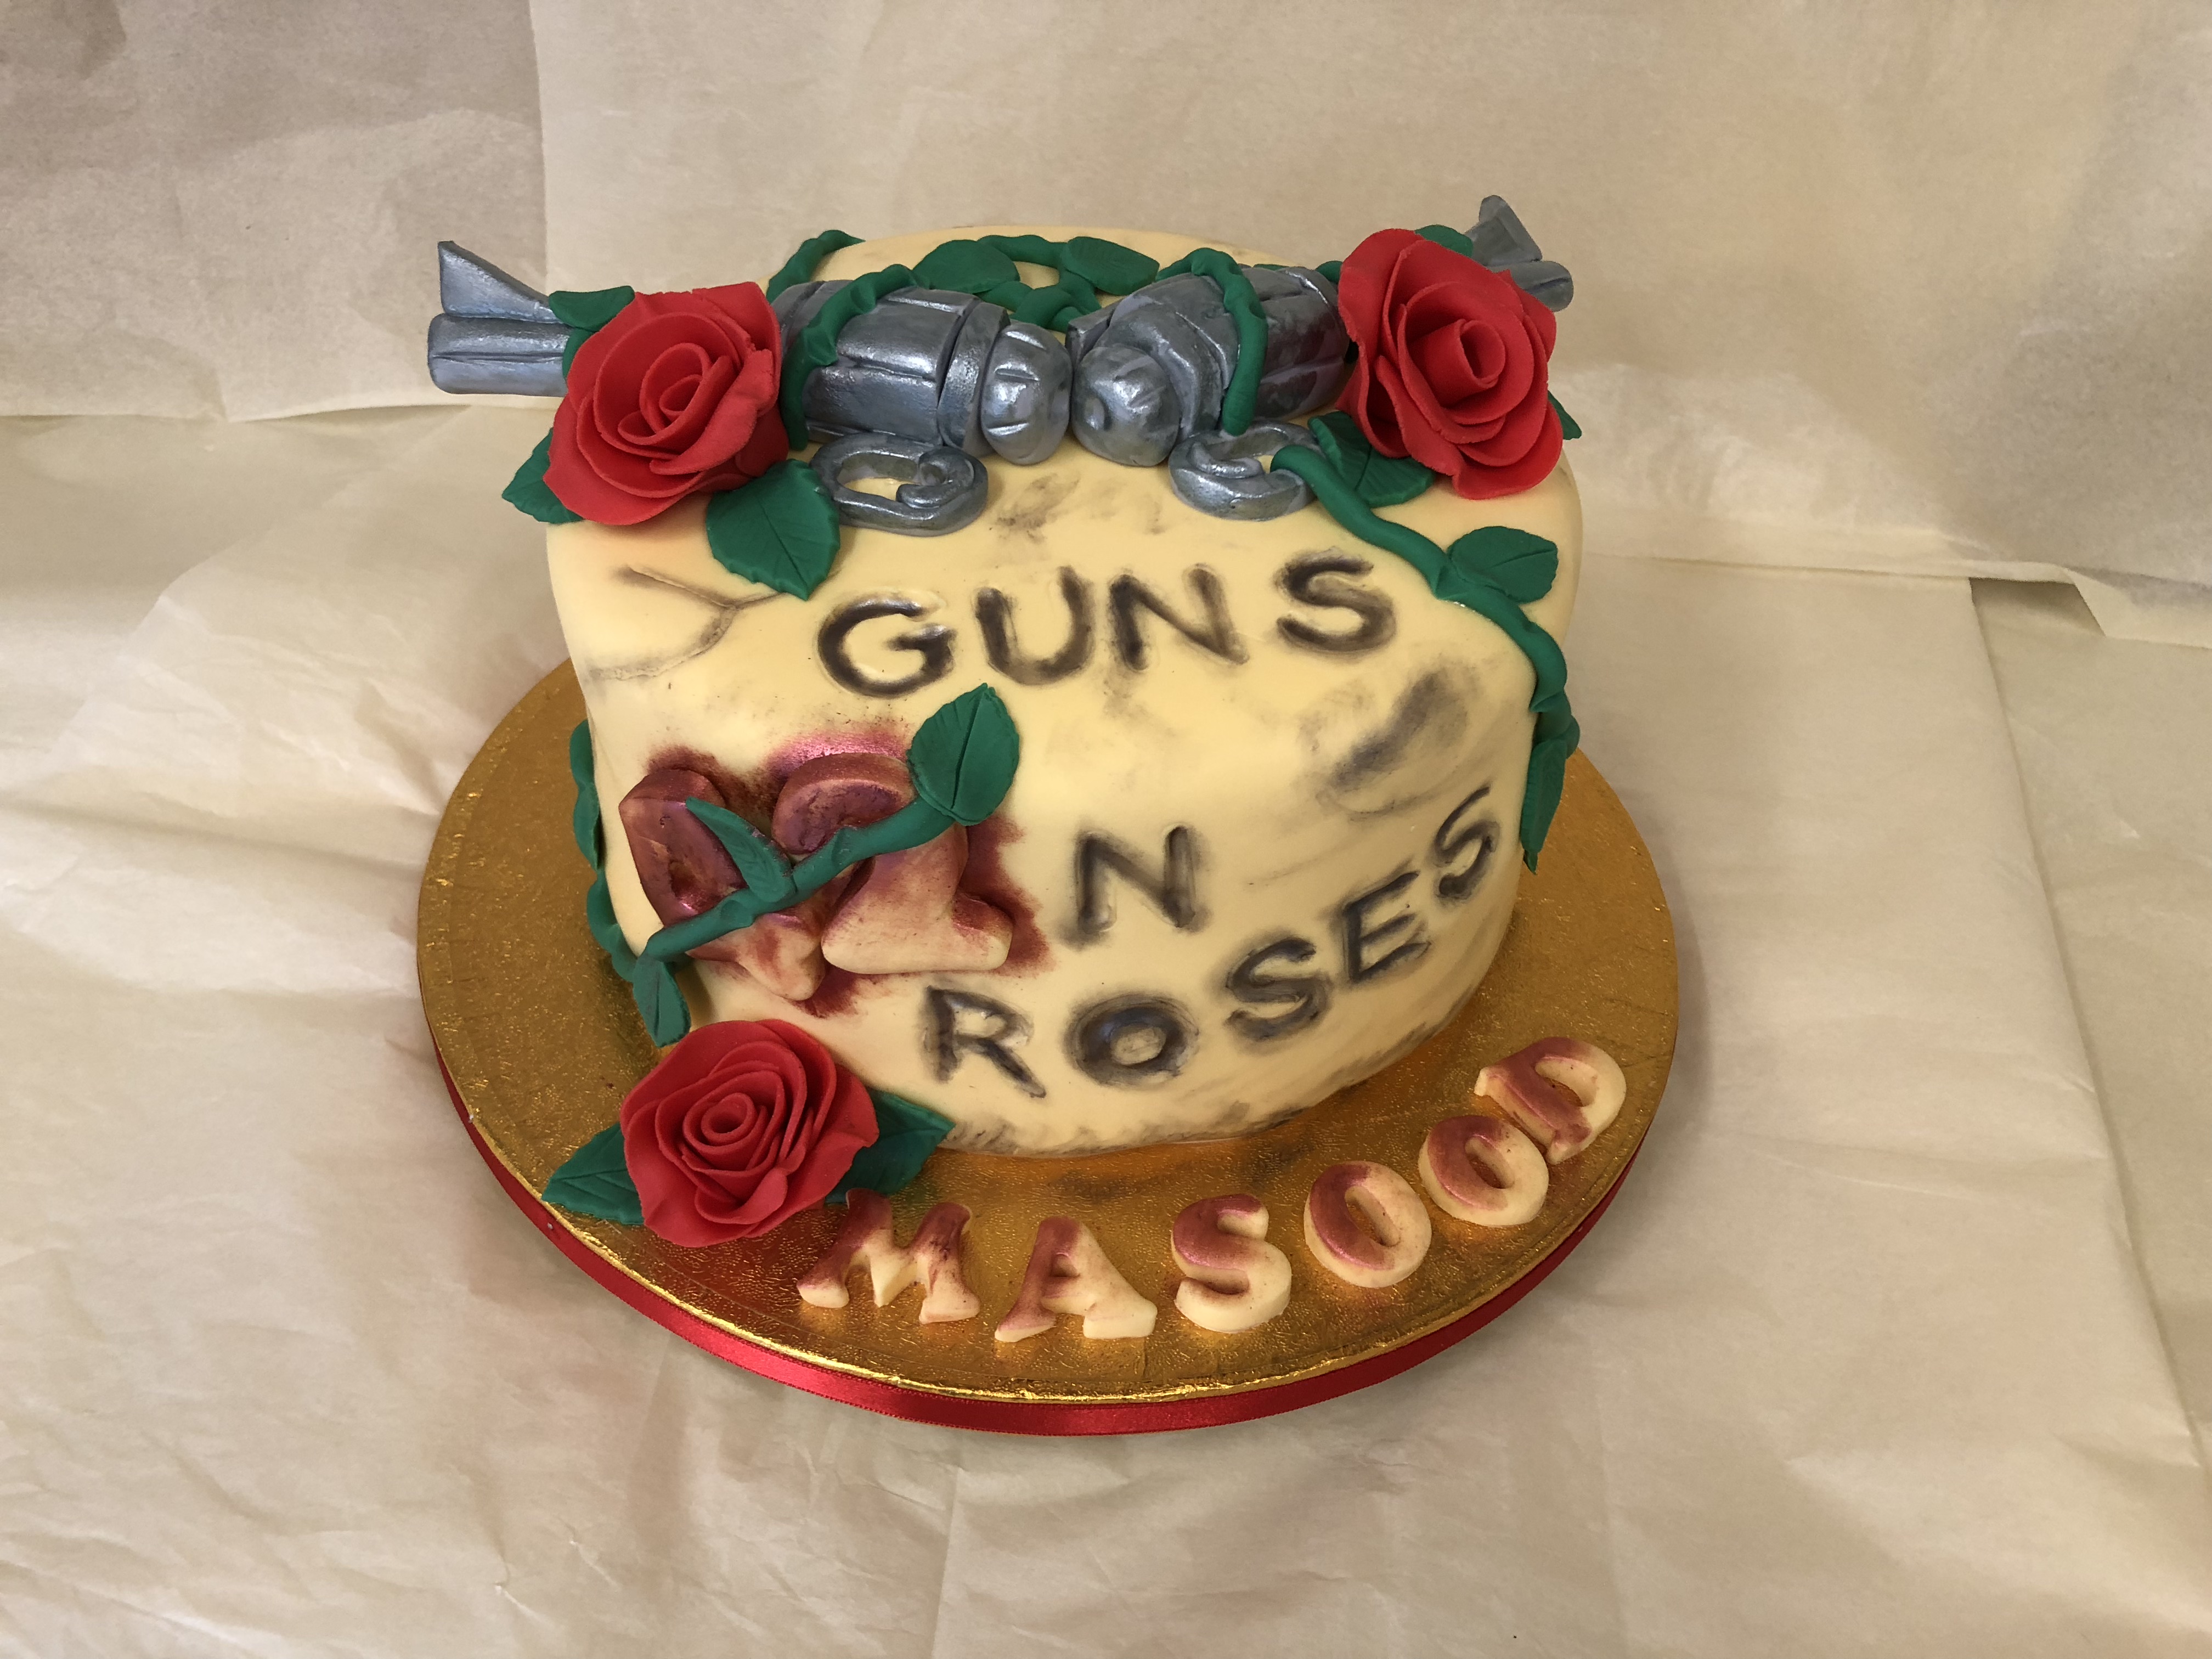 Guns n roses.jpg